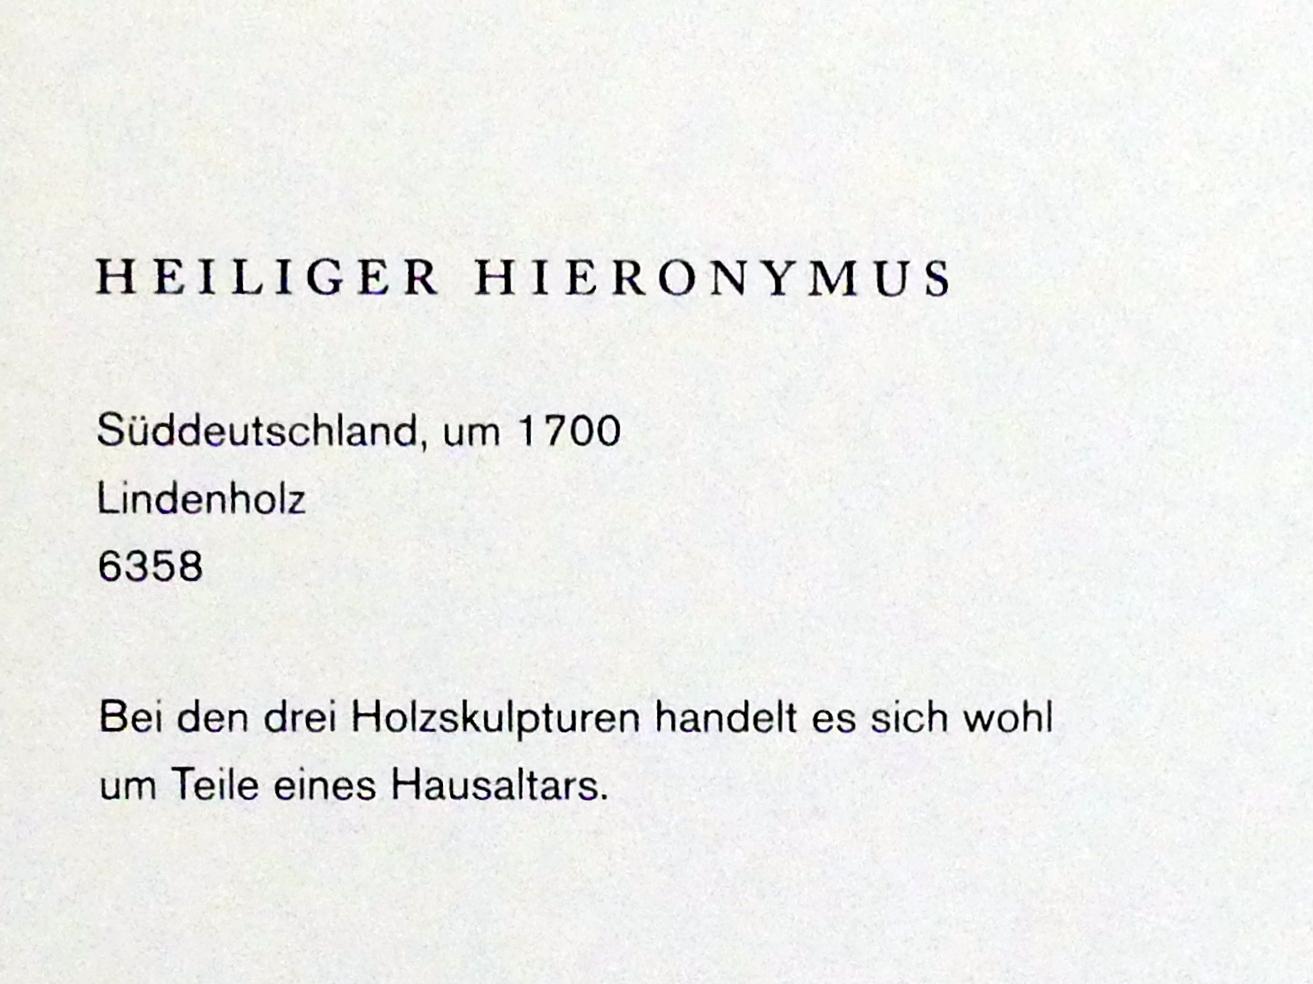 Heiliger Hieronymus, Augsburg, Maximilianmuseum, Sammlung Röhrer, um 1700, Bild 2/2